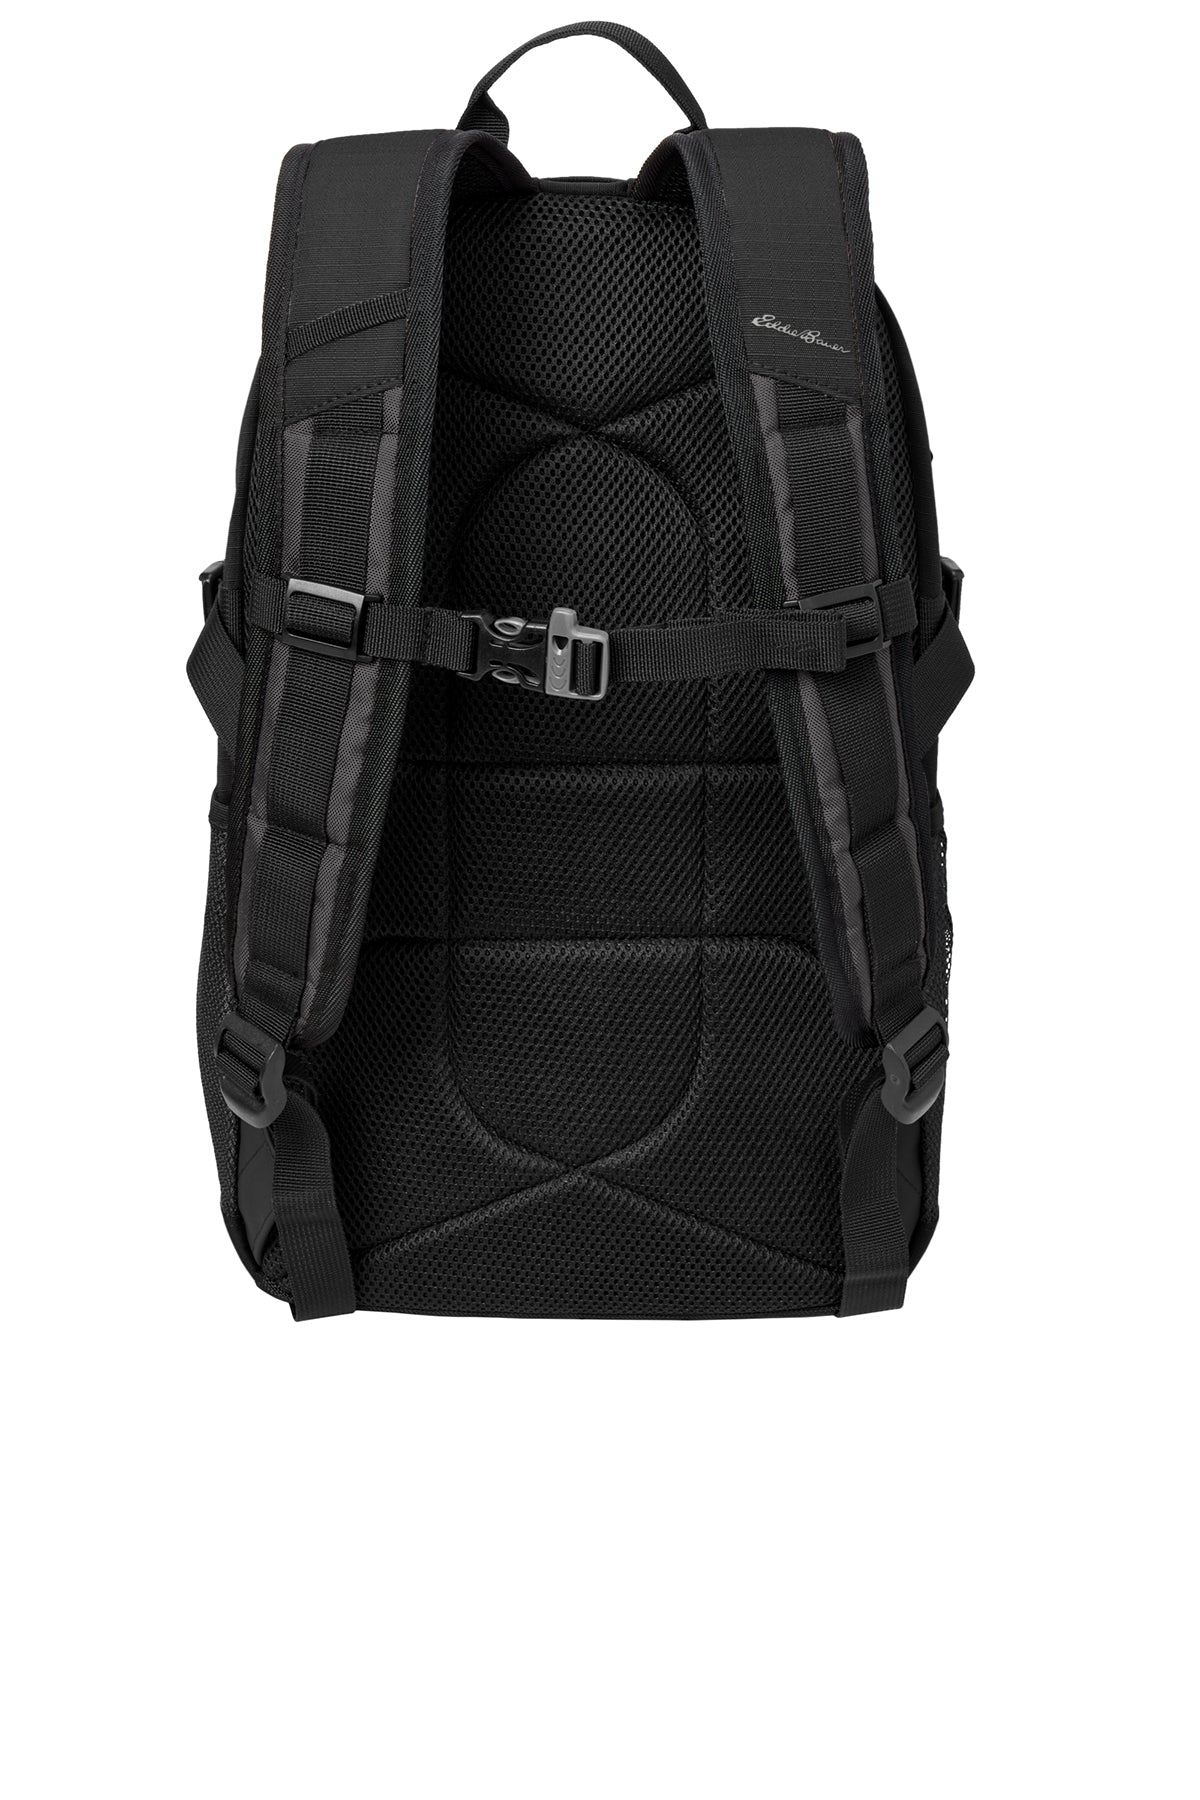 Eddie Bauer Custom Ripstop Backpacks, Black